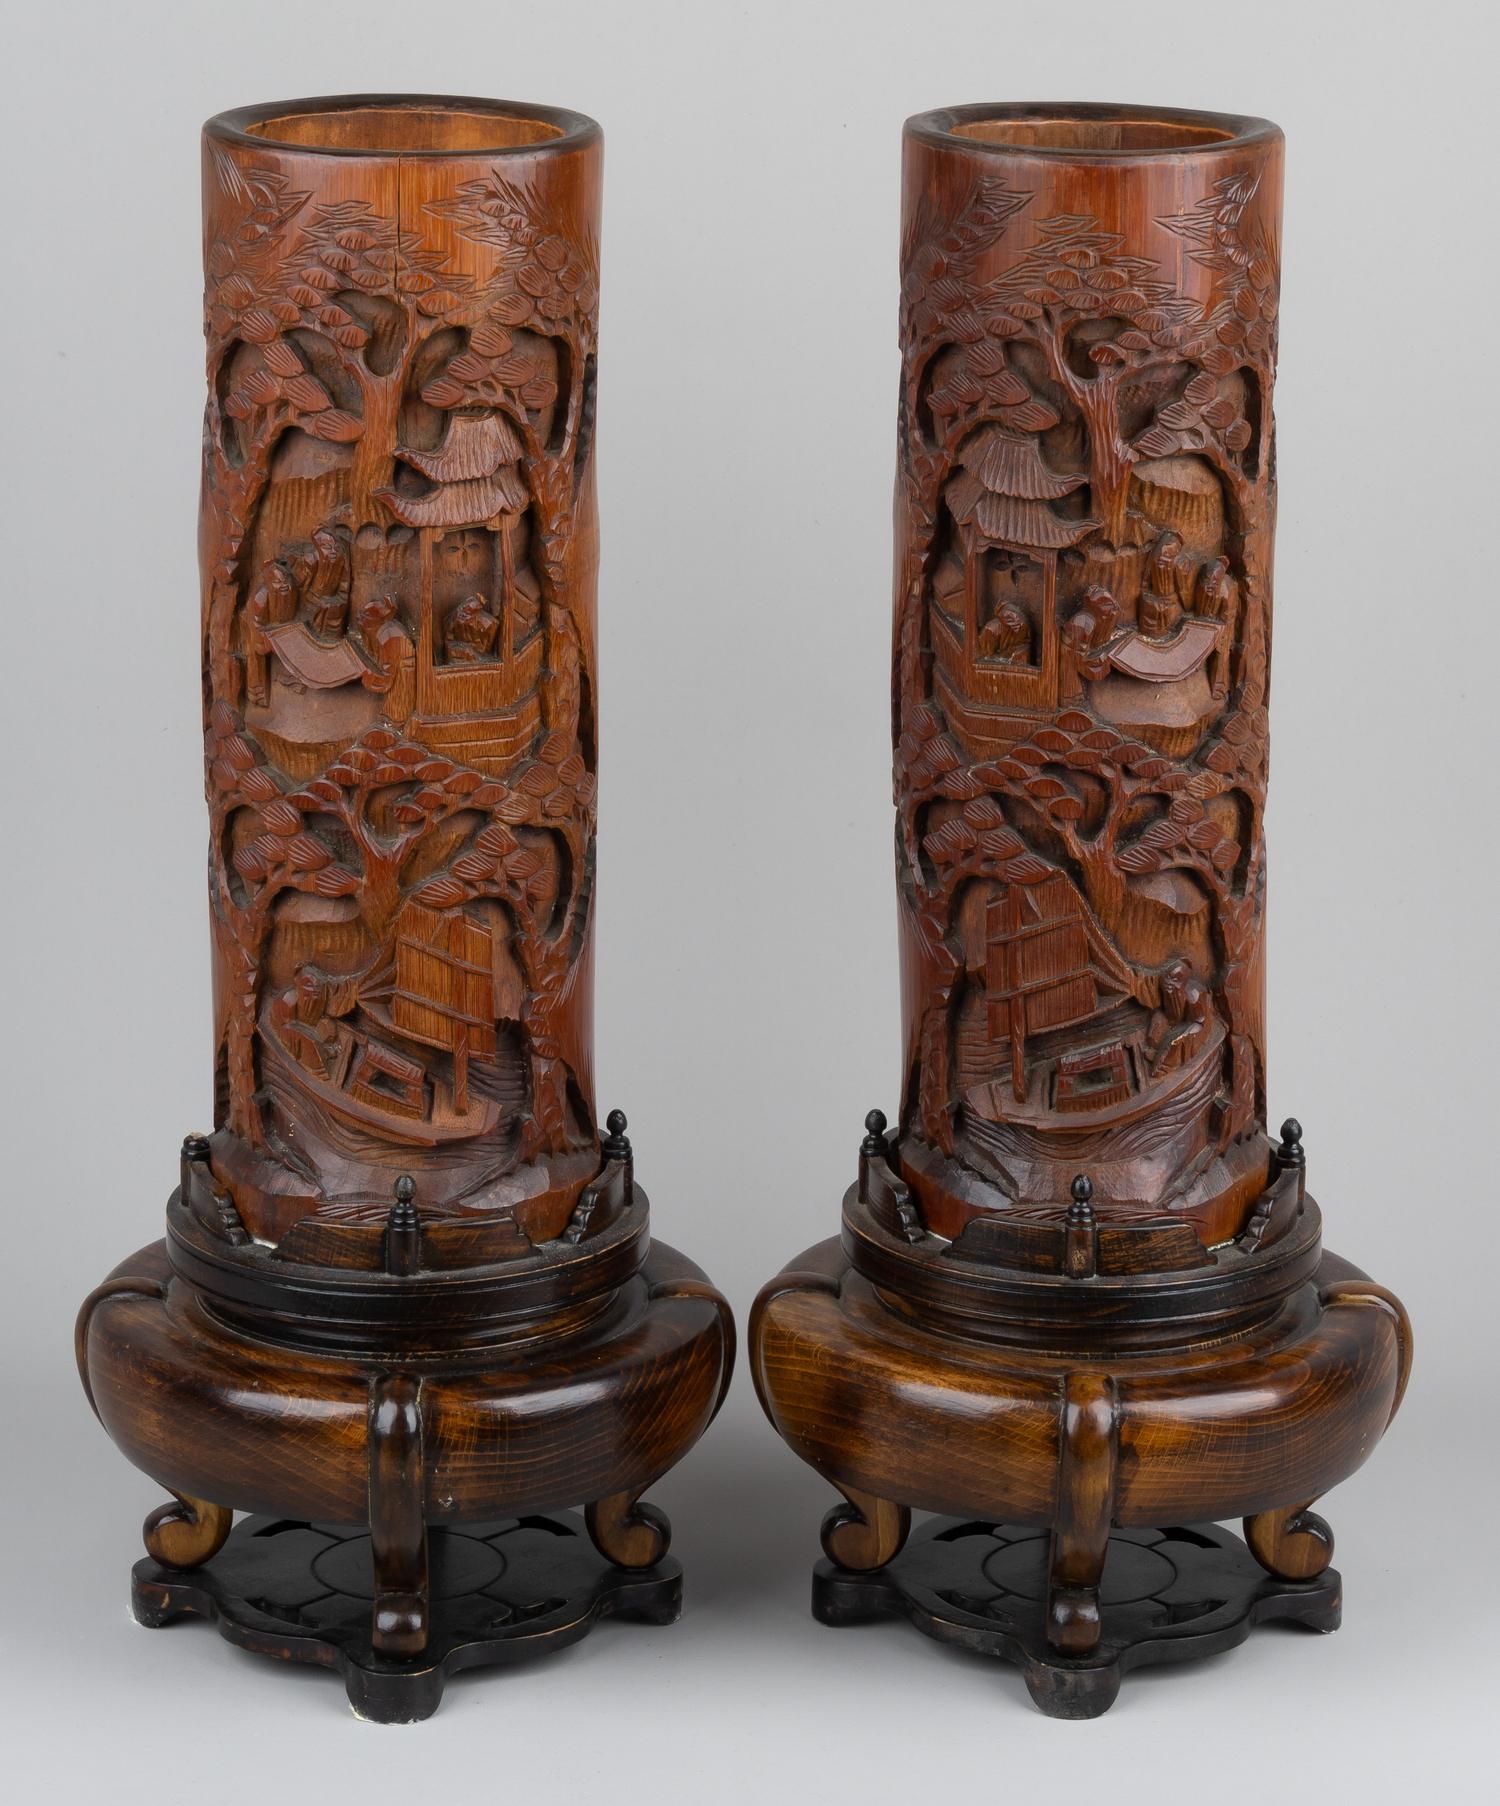 (Период династии Цин) Парные бамбуковые вазы с художественной резьбой «Ученые в гроте». <br>Китай, династия Цин, конец XIX века.